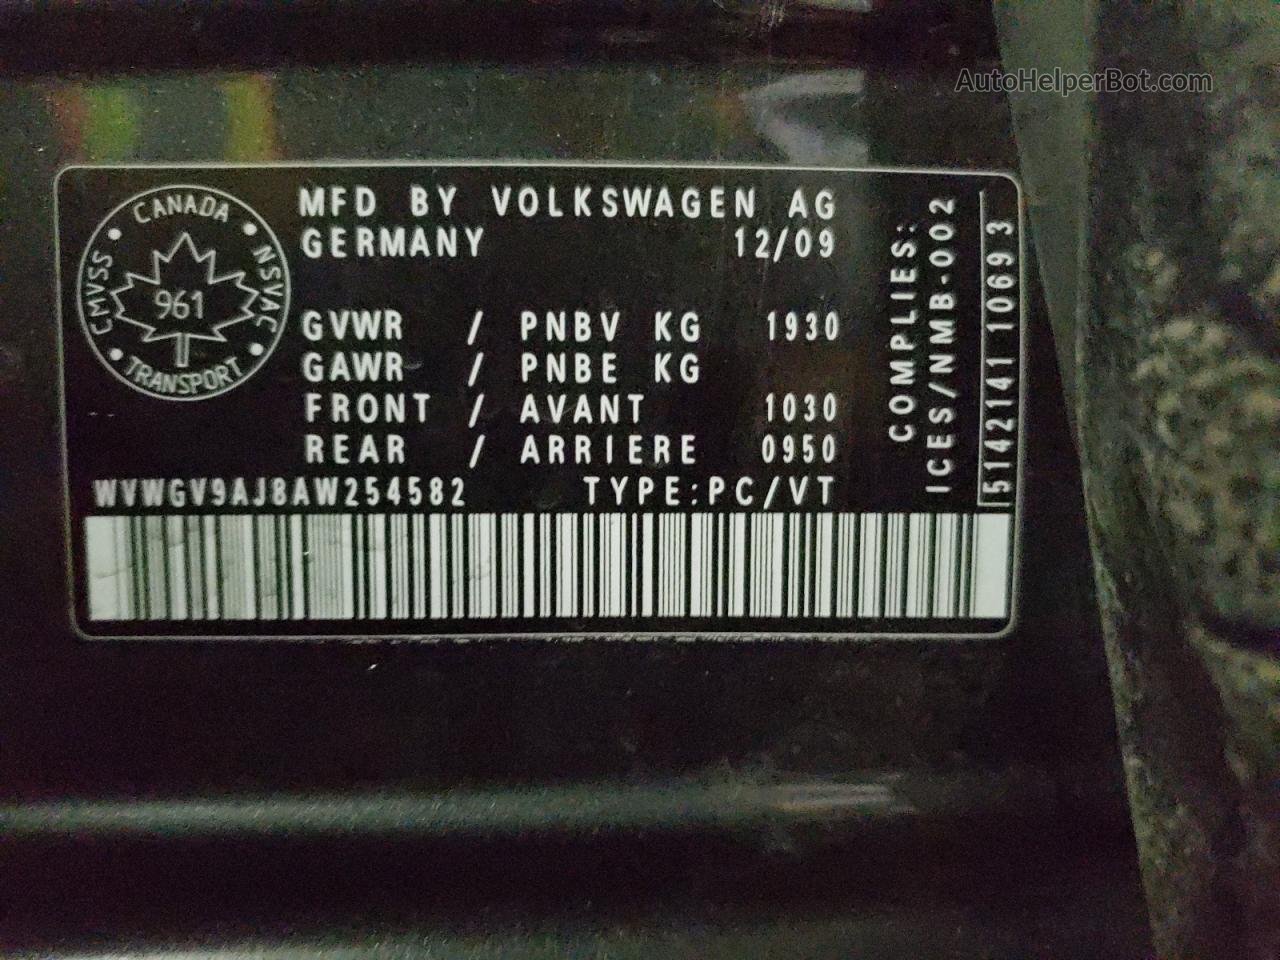 2010 Volkswagen Gti  Gray vin: WVWGV9AJ8AW254582